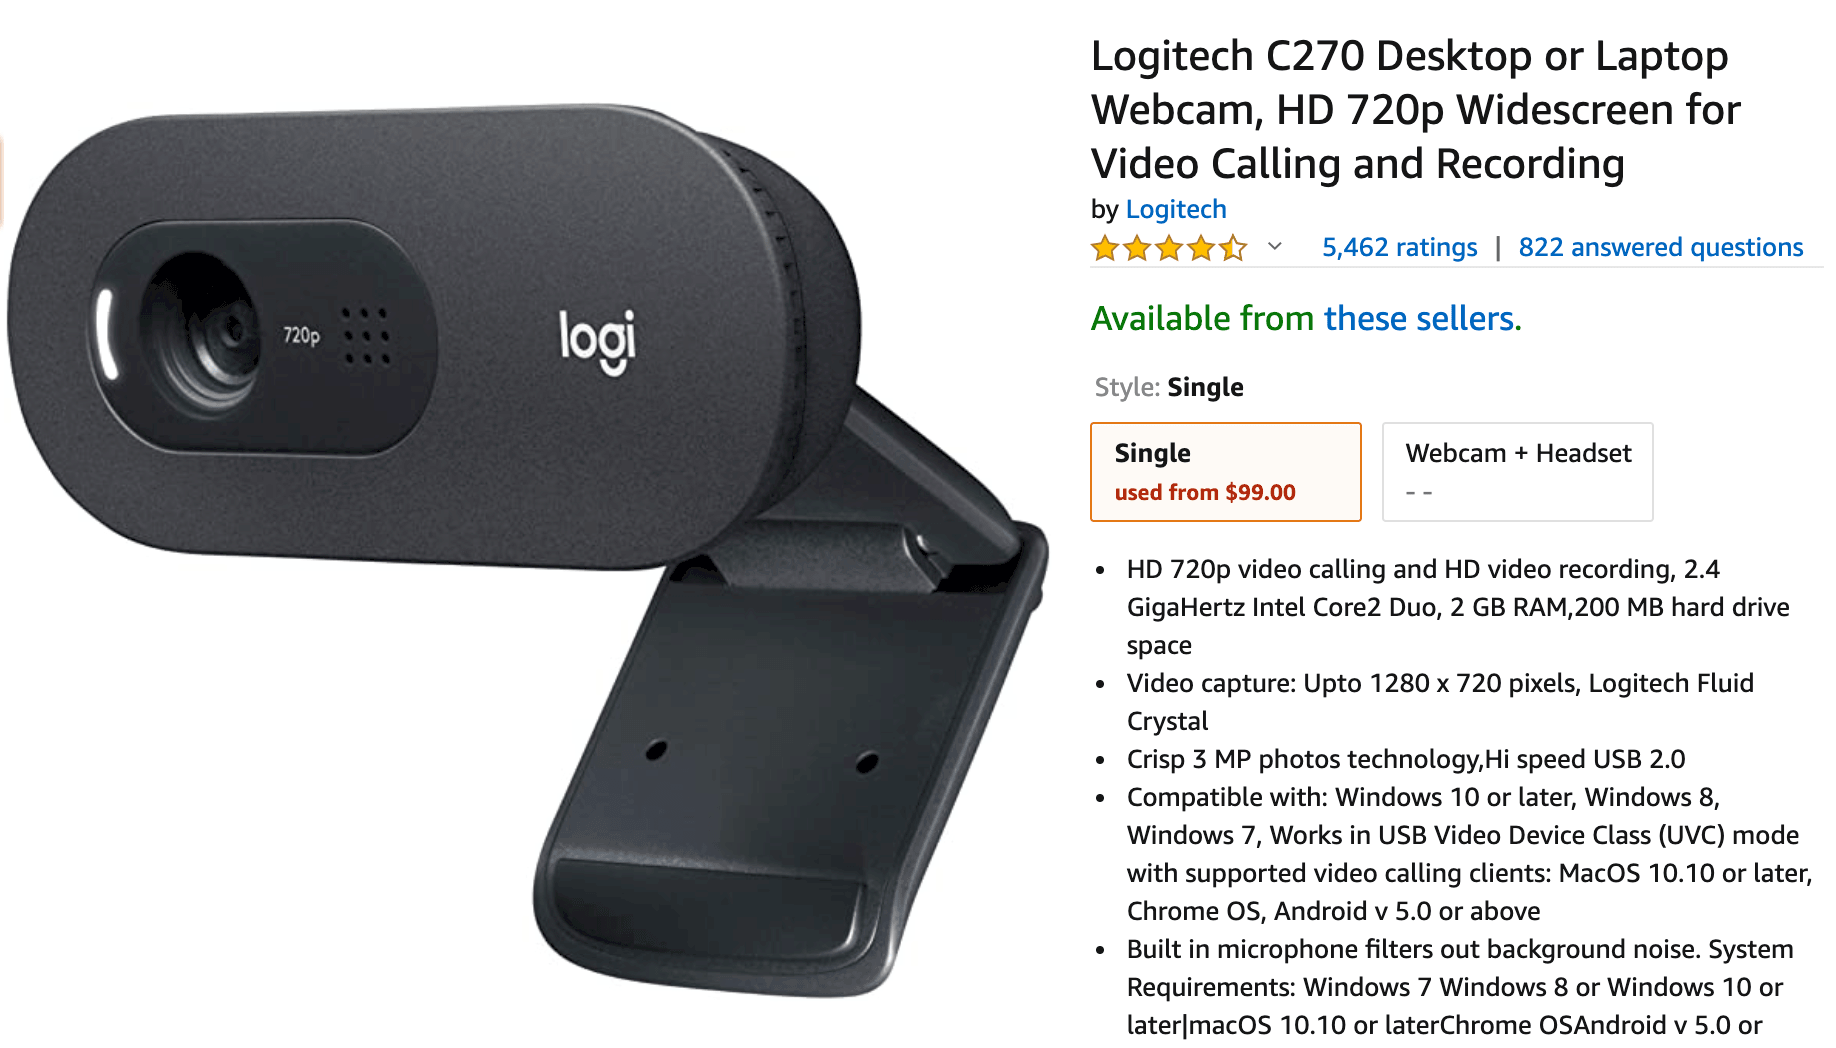 Logictech Webcam For Video Interviews